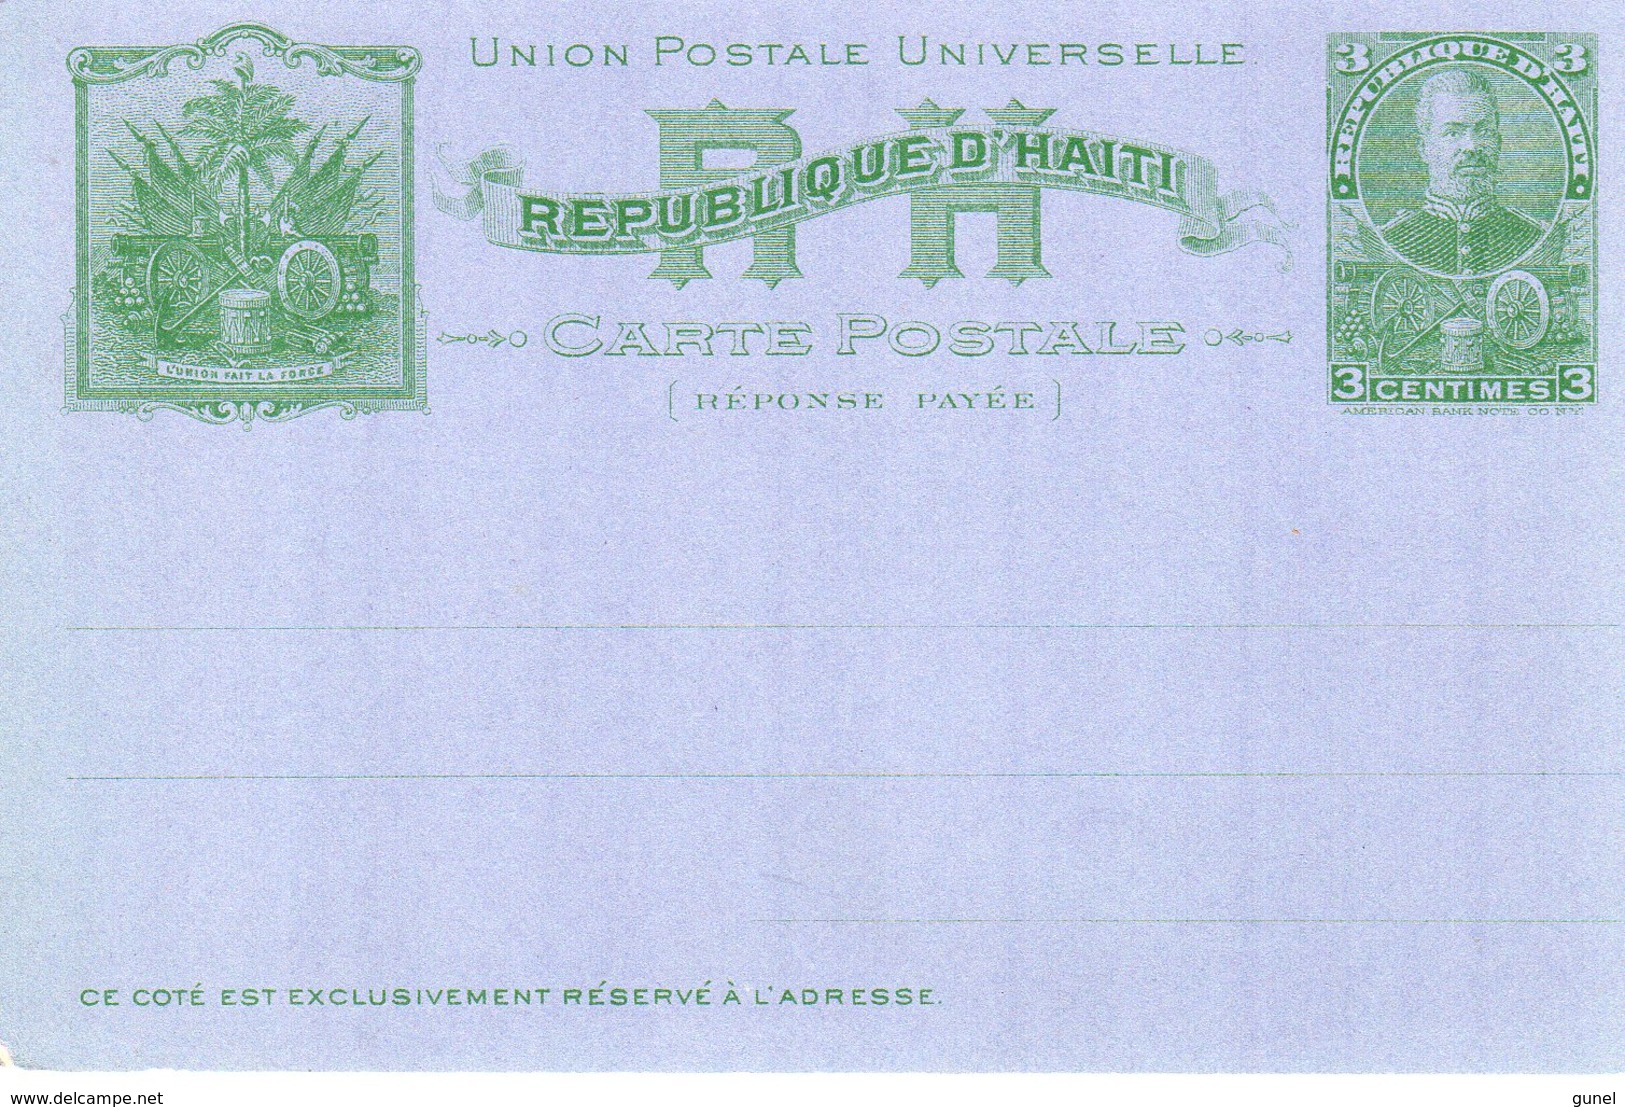 Carta Postale 3 Centimes  Reponse Payee Ongebruikt - Haiti